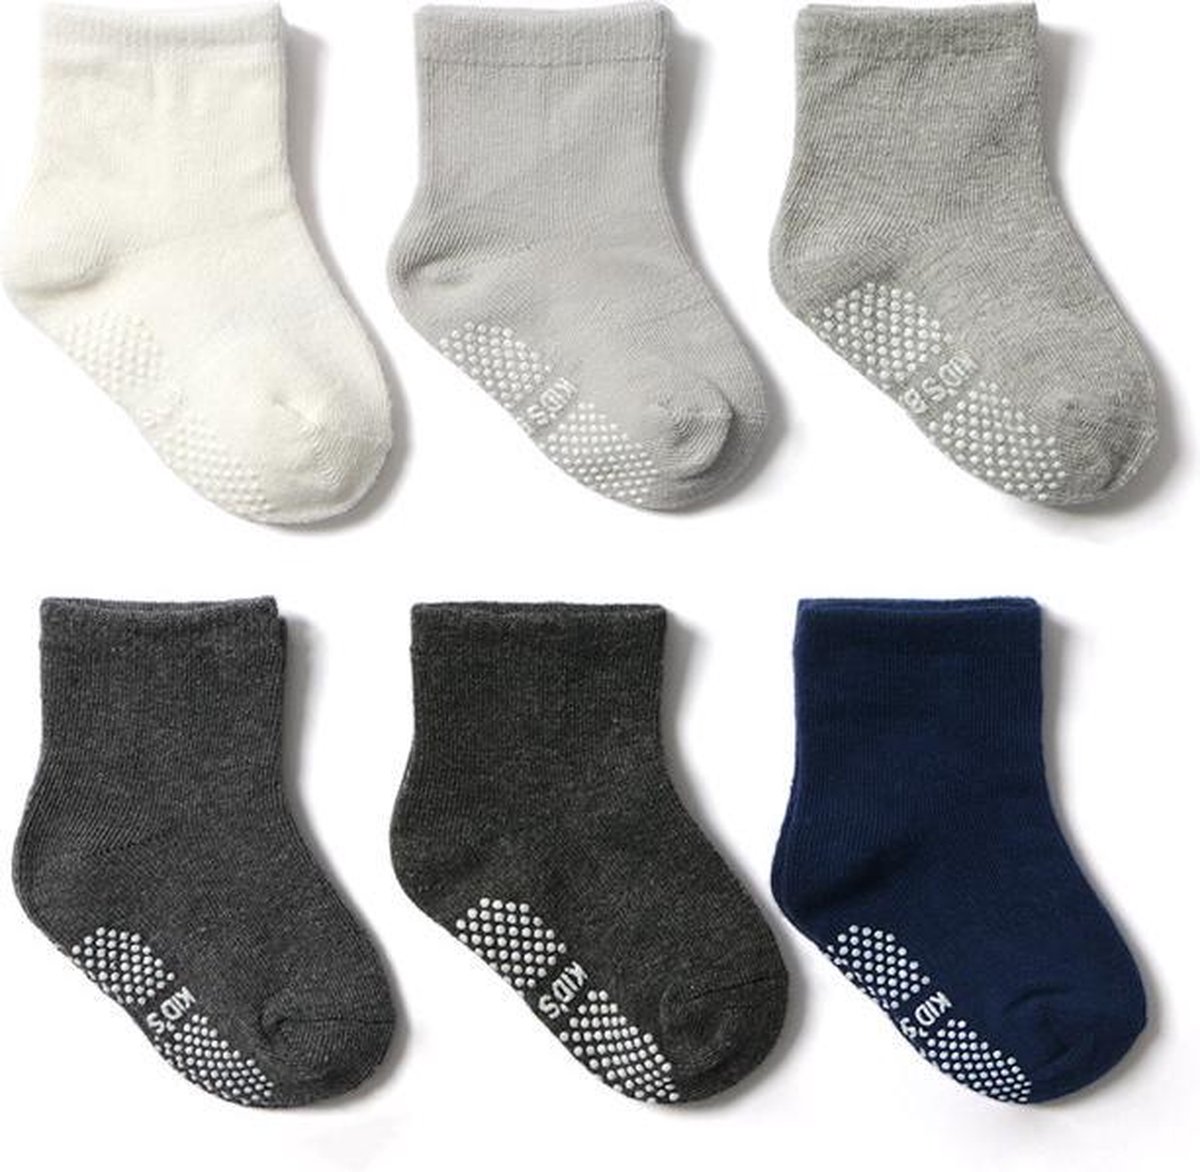 6 paar - Stevige baby Antislip sokken effen blauw grijs (6-12 mnd) - jongens meisjes - Merkloos